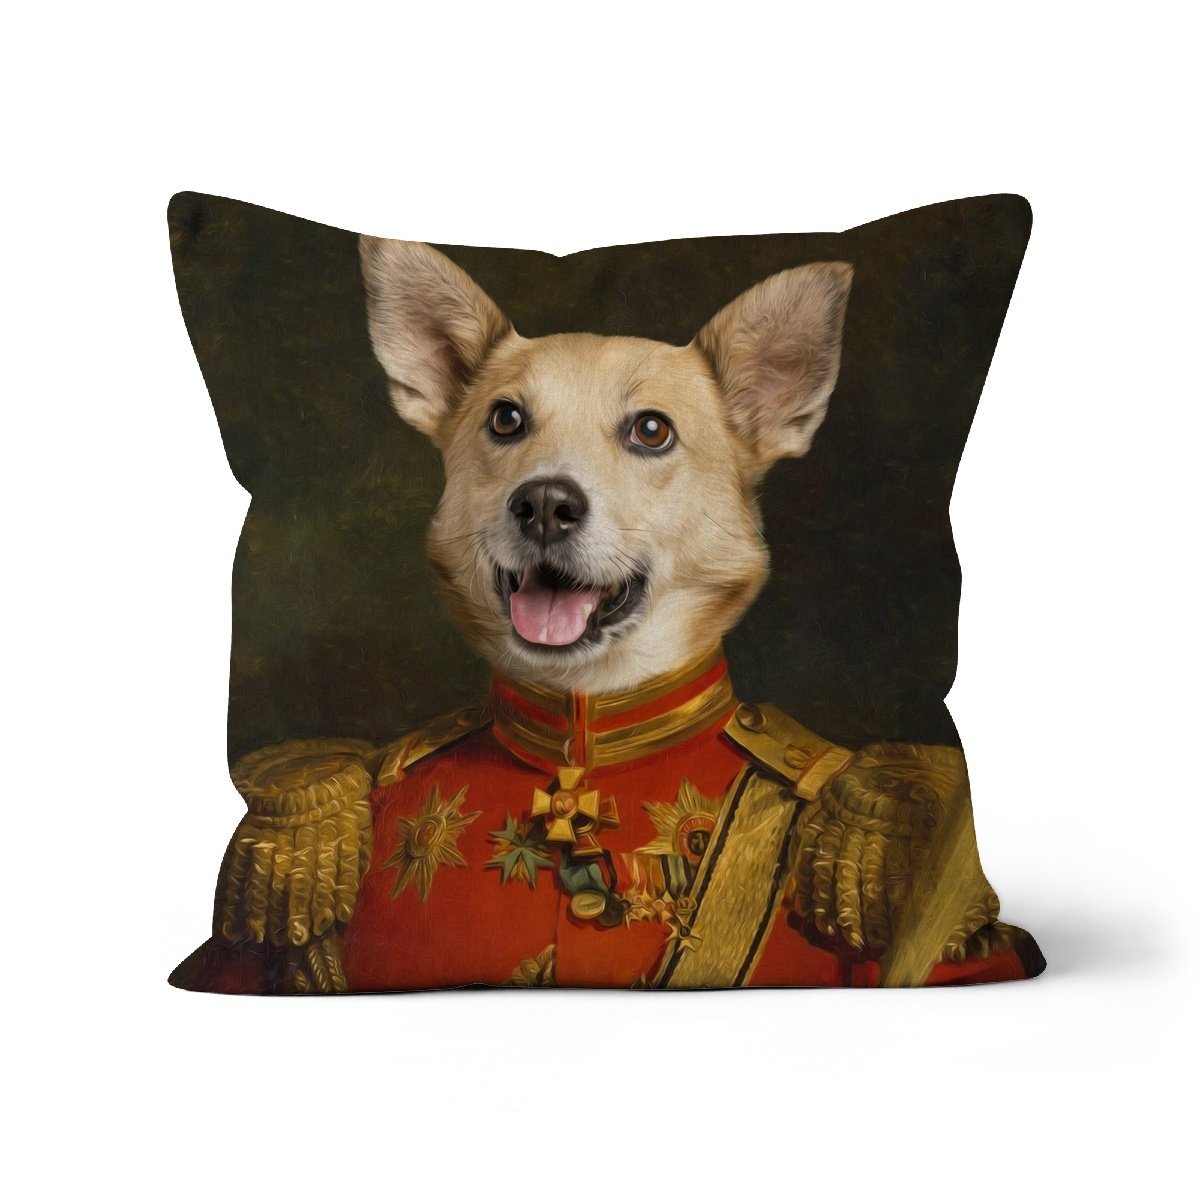 The Duke: Custom Pet Throw Pillow - Paw & Glory - #pet portraits# - #dog portraits# - #pet portraits uk#paw & glory, pet portraits pillow,pet custom pillow, personalised dog pillows, dog pillow cases, pillow with dogs face, pillow custom, dog photo on pillow